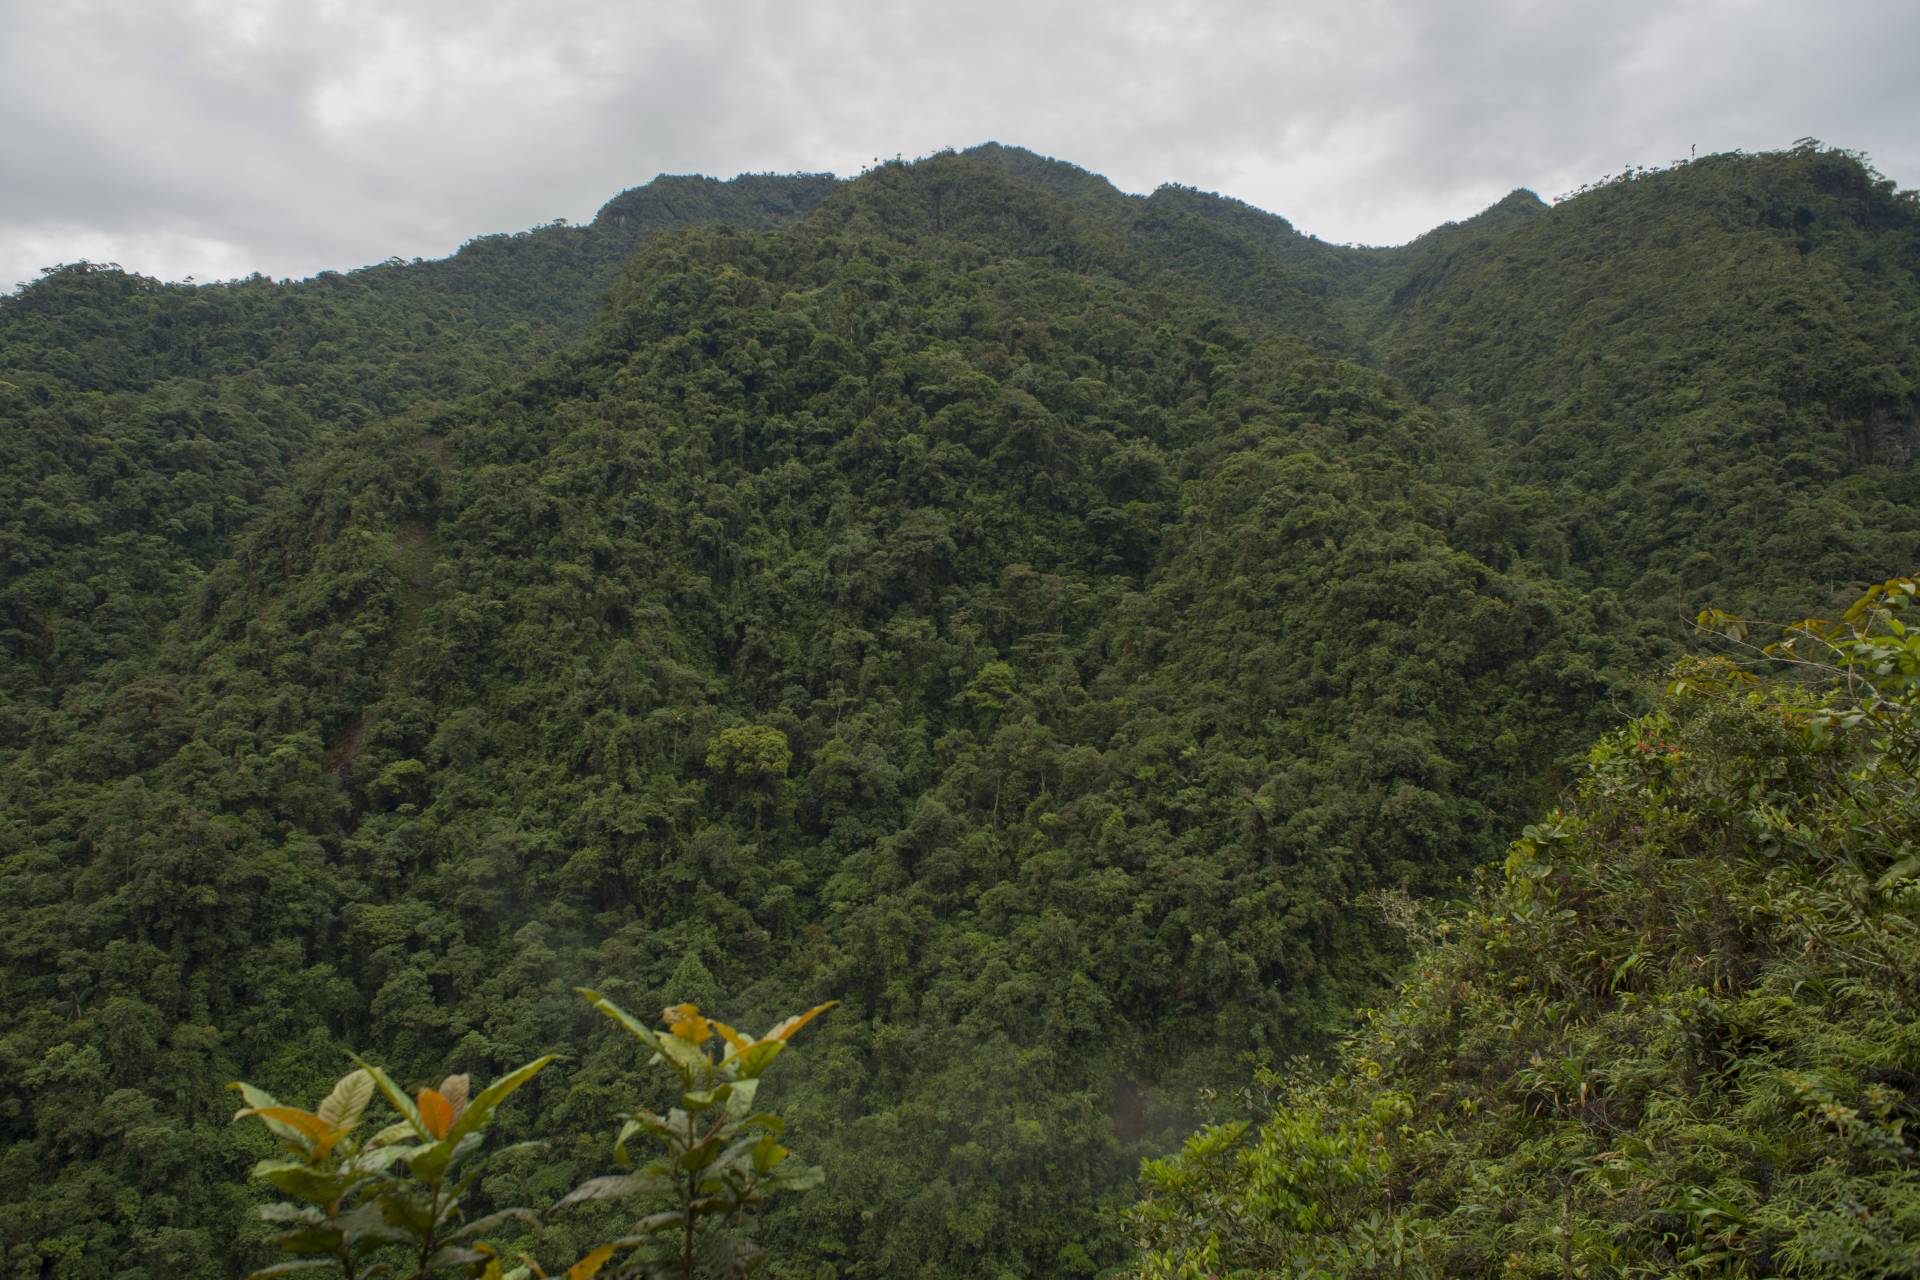 Montane forest in Santiago, Ecuador.